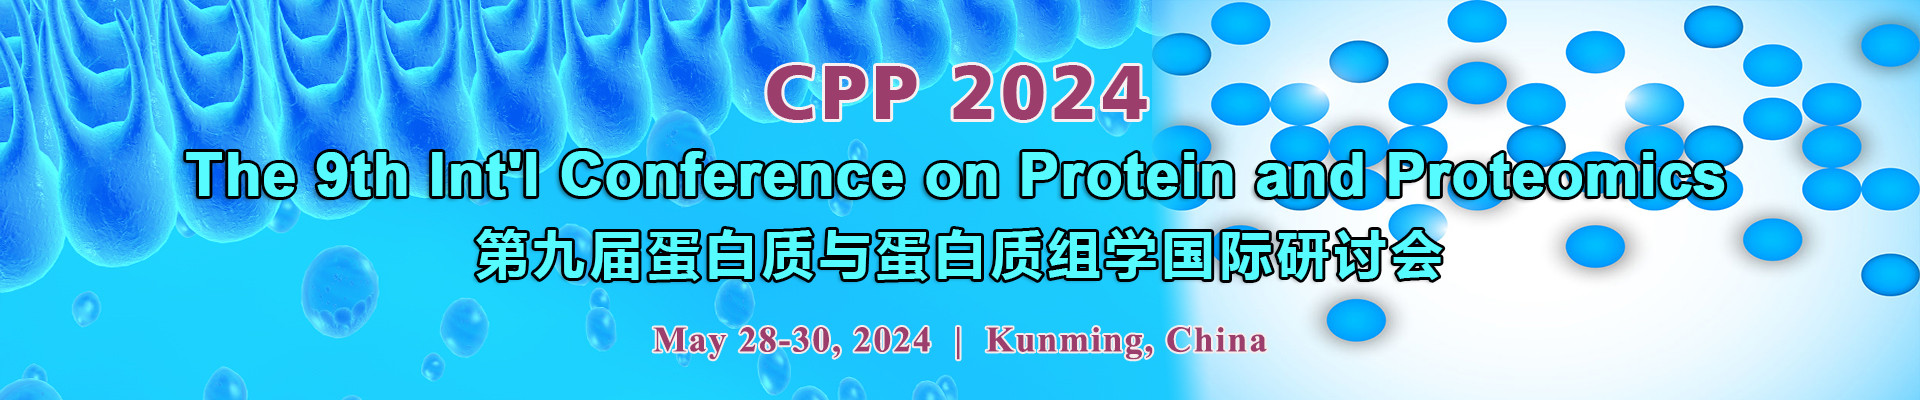 第九屆蛋白質與蛋白質組學國際研討會(CPP 2024)